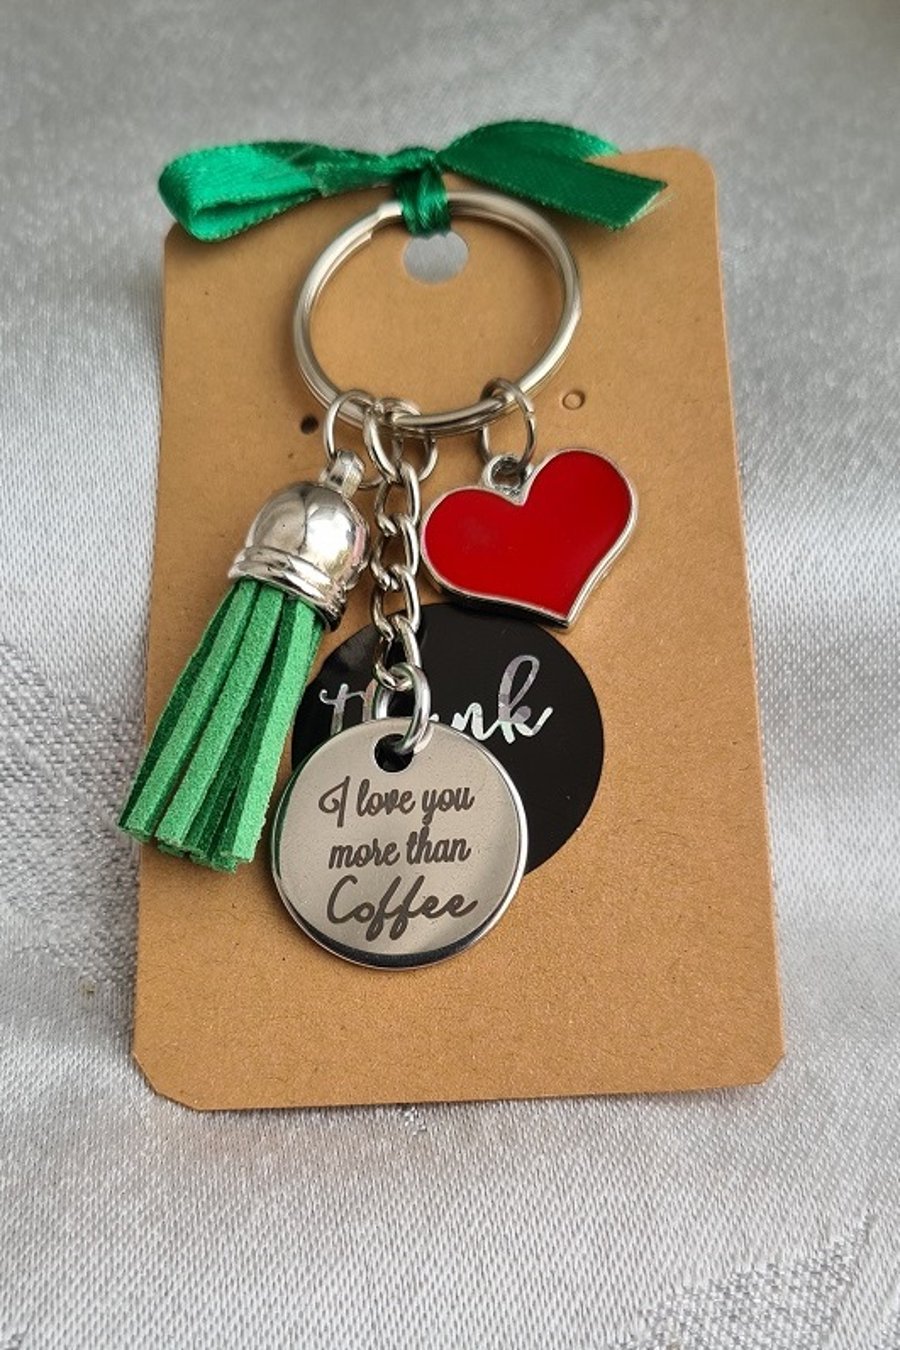 More Than Coffee Key Ring - Style B - Key Chain Bag Charm.